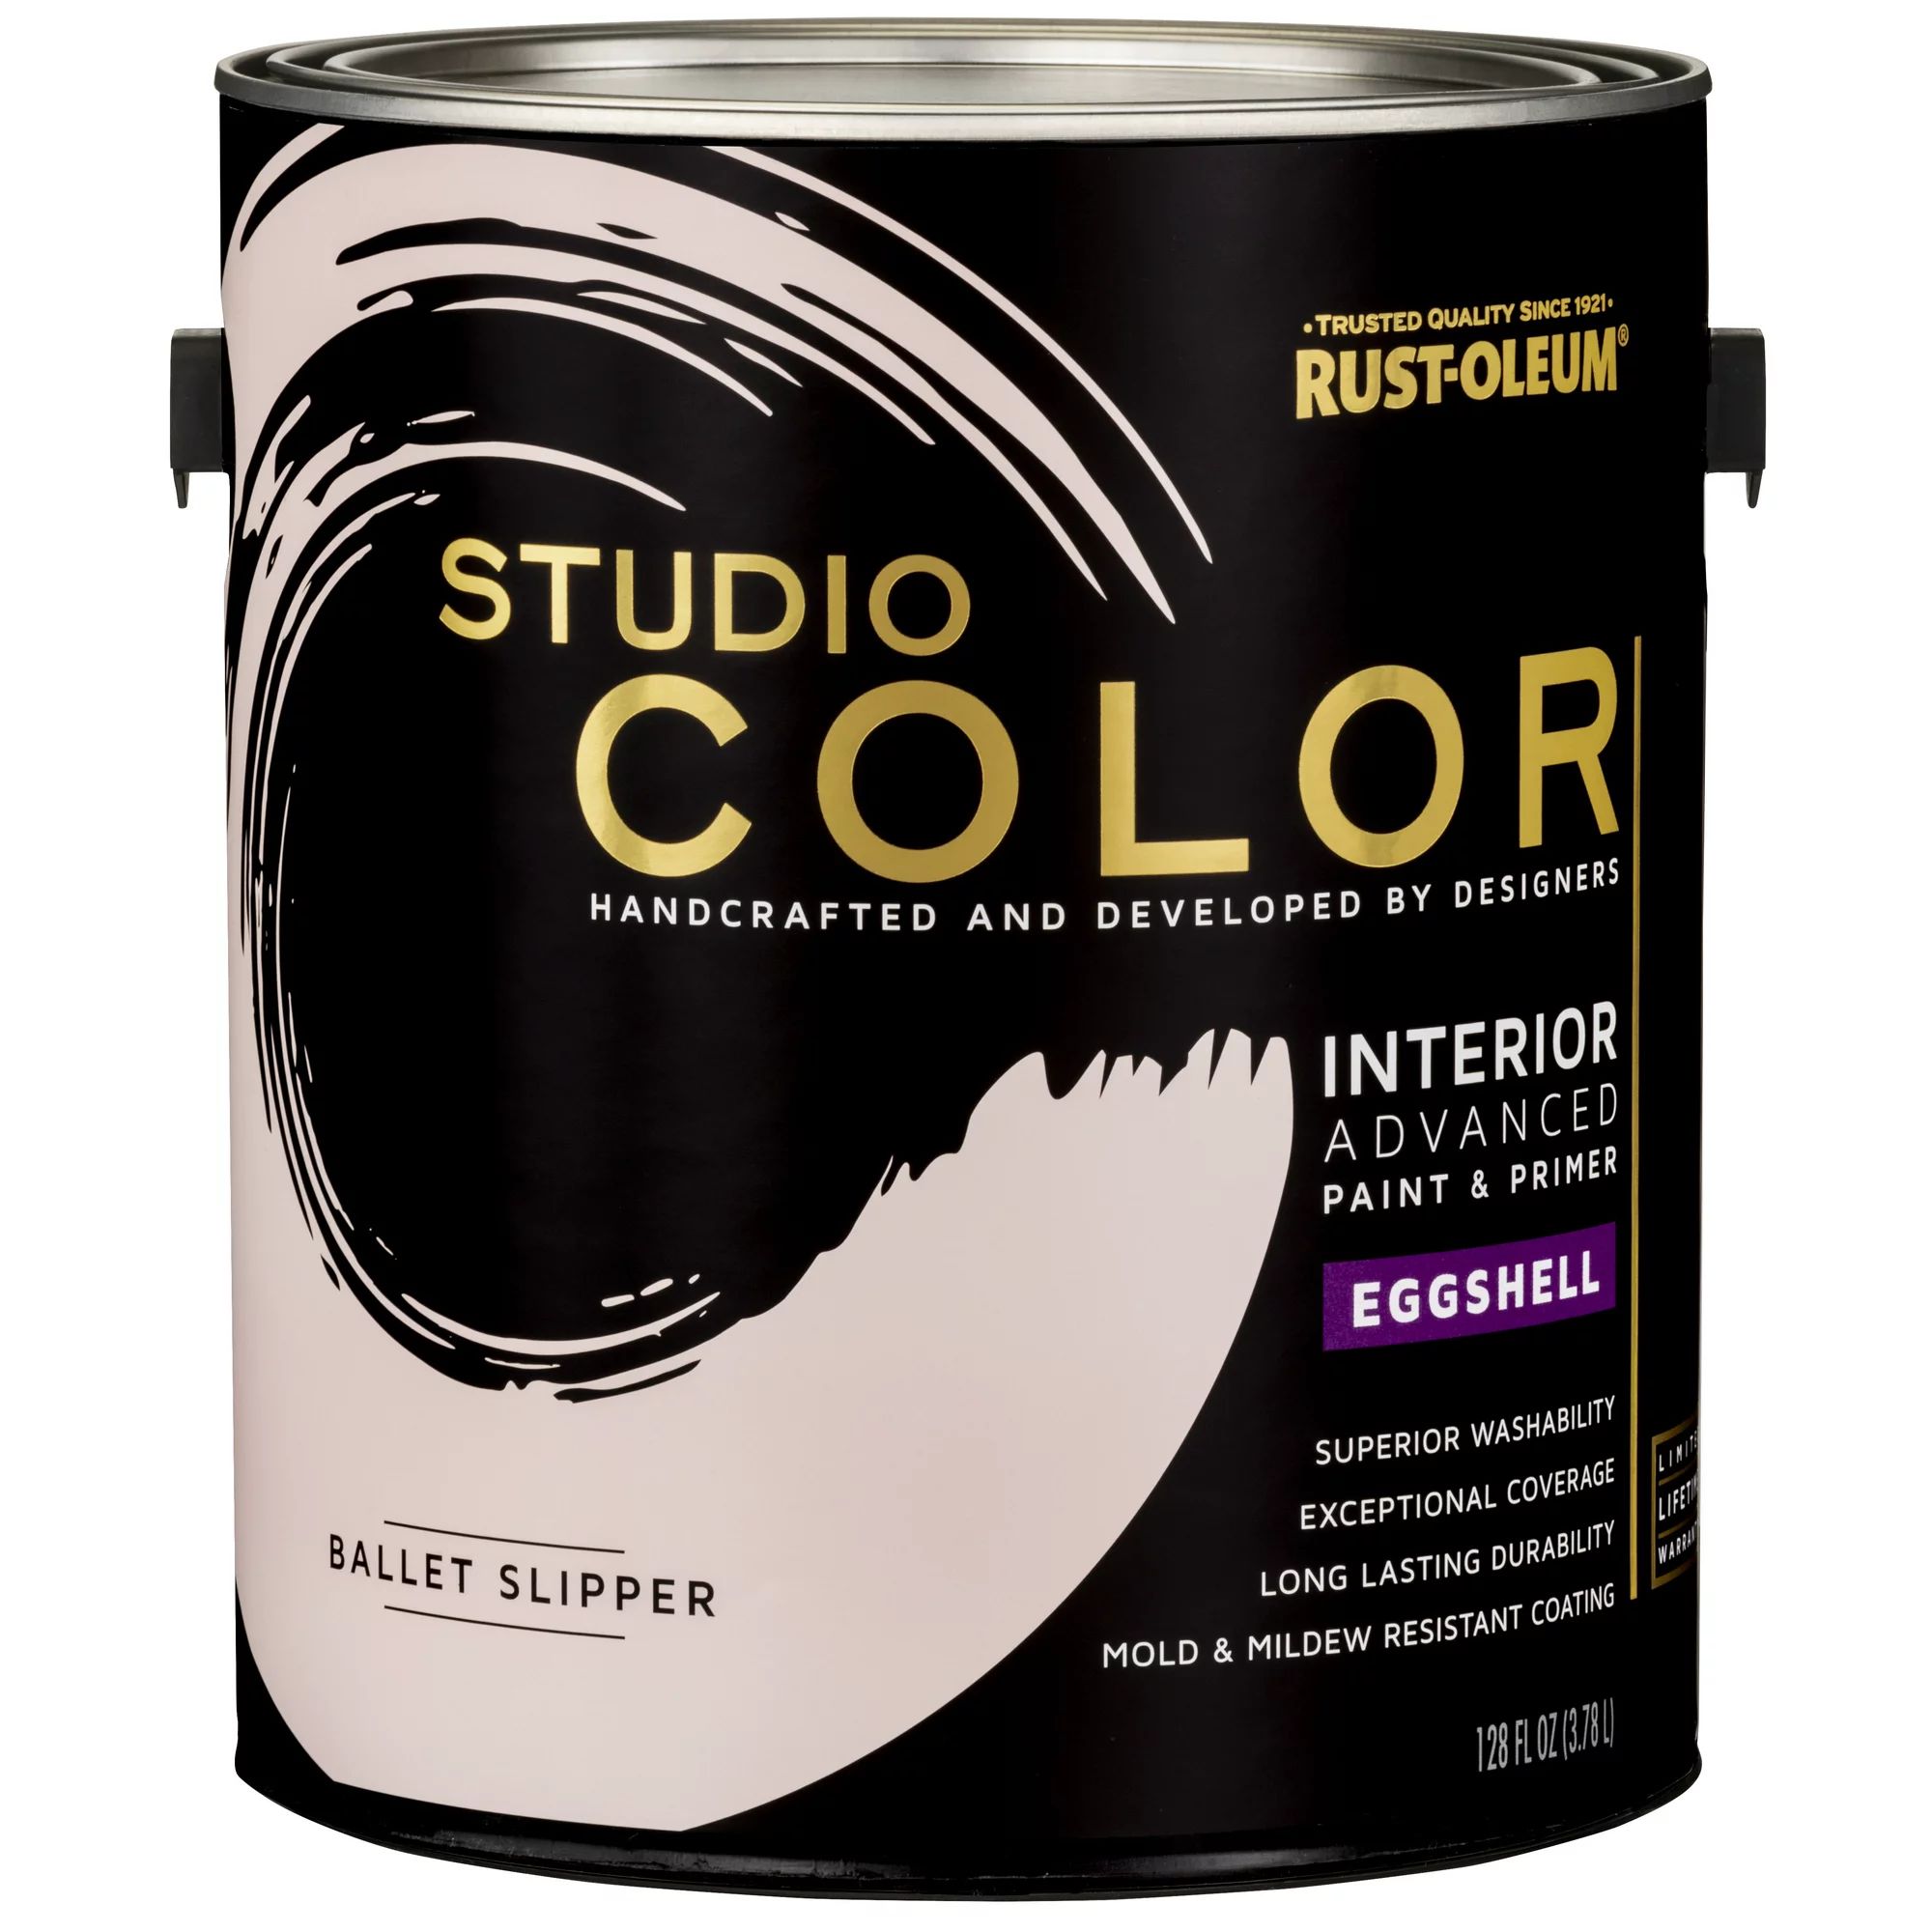 Ballet Slipper, Rust-Oleum Studio Color Interior Paint + Primer, Eggshell Finish, 2-Pack | Walmart (US)